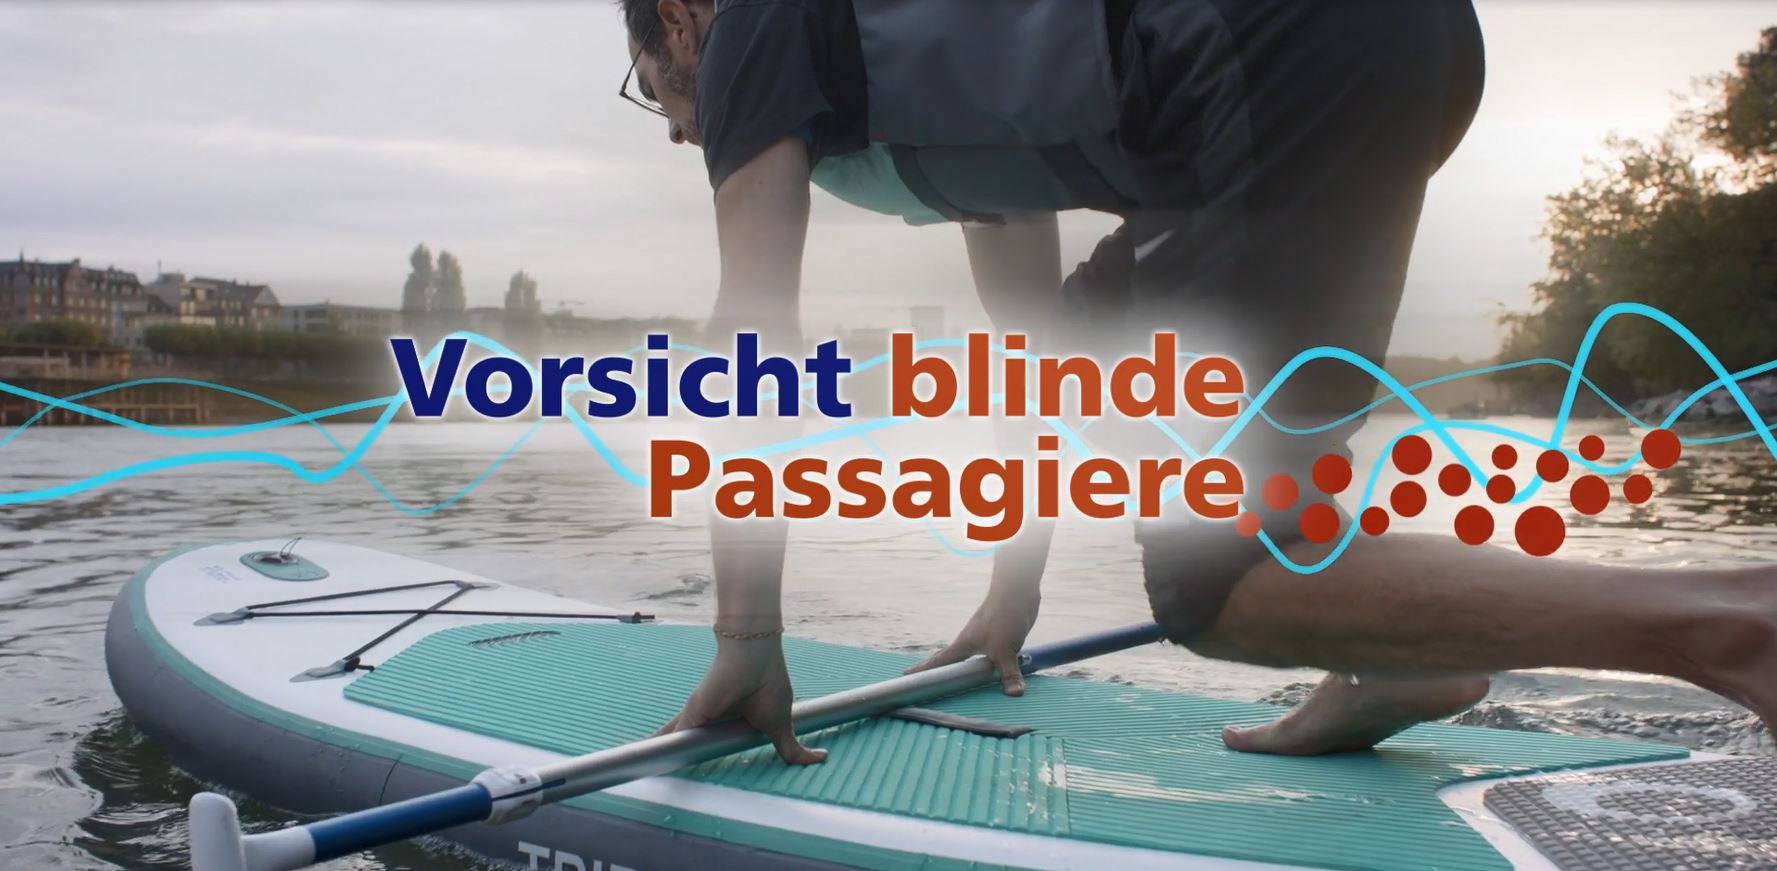 Standup-Paddler mit Texteinblendung «Vorsicht blinde Passagiere»